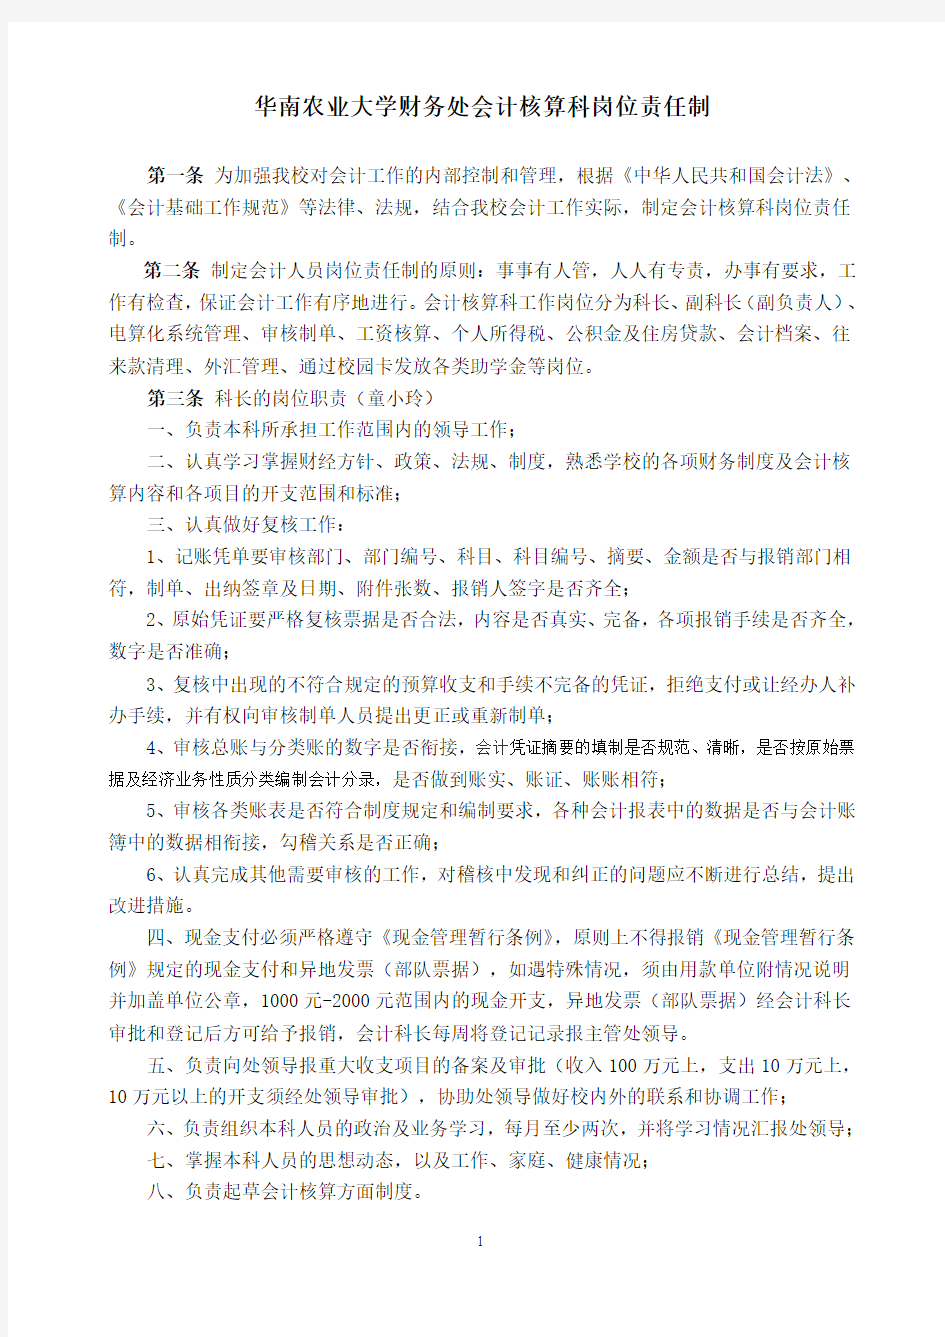 华南农业大学财务处会计核算科岗位责任制